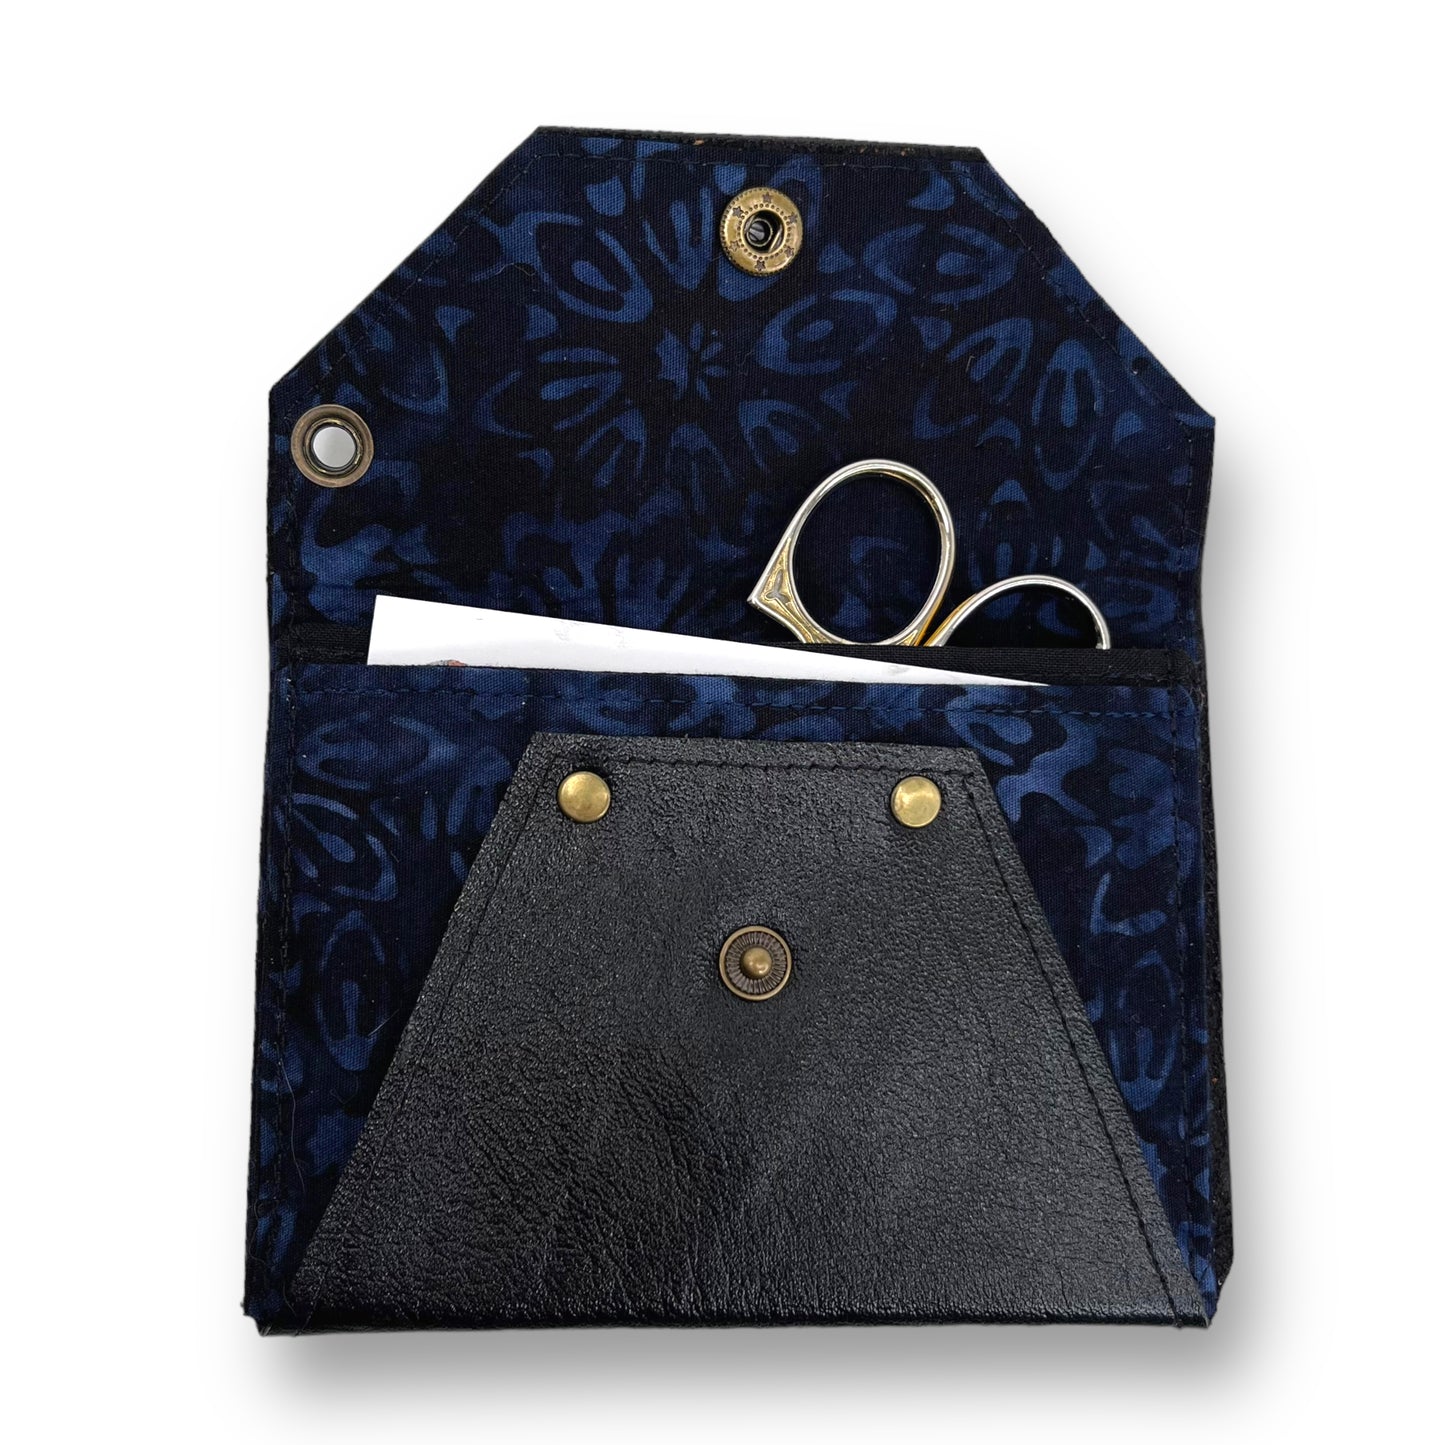 Black & Blue Envelope Leather Wallet